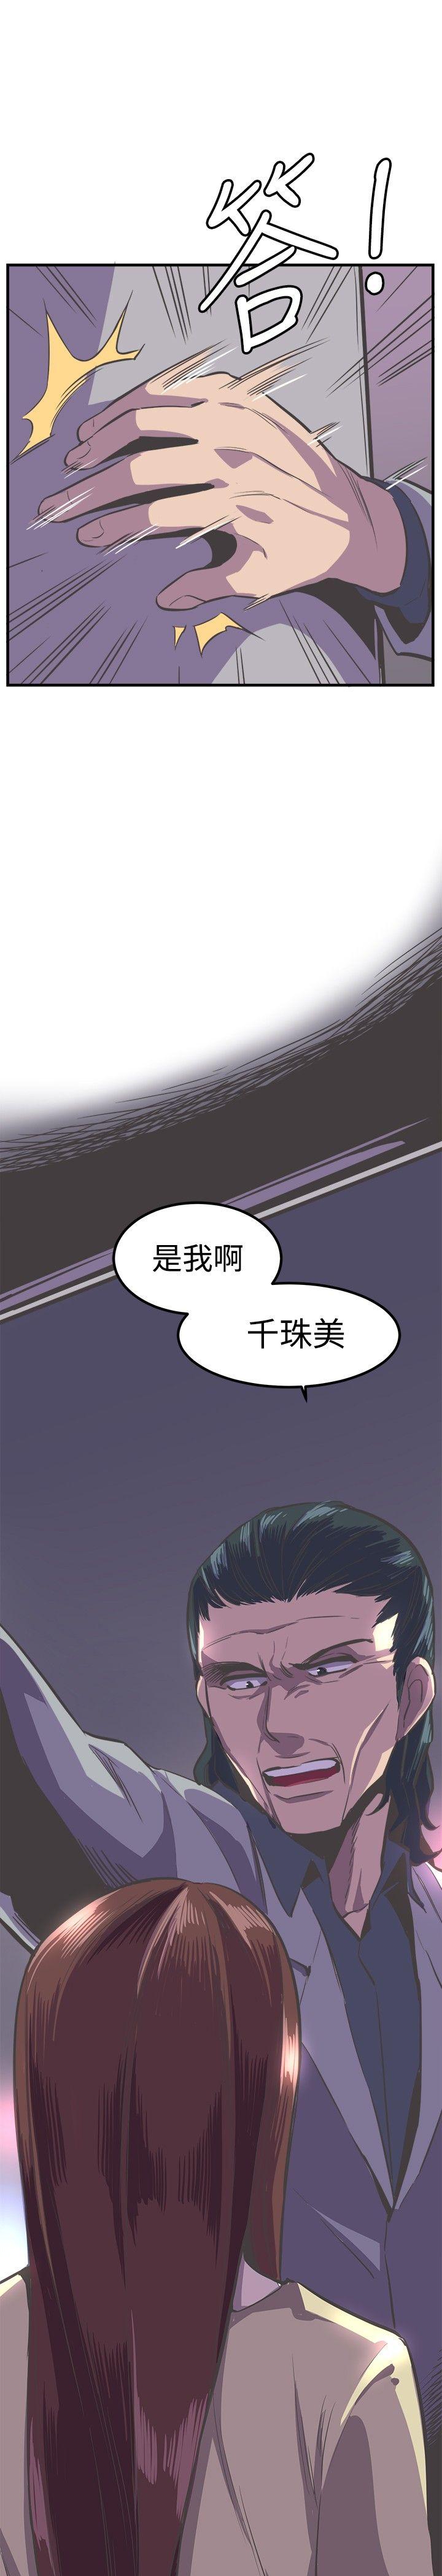 青春男女(完结)  第24话 漫画图片1.jpg